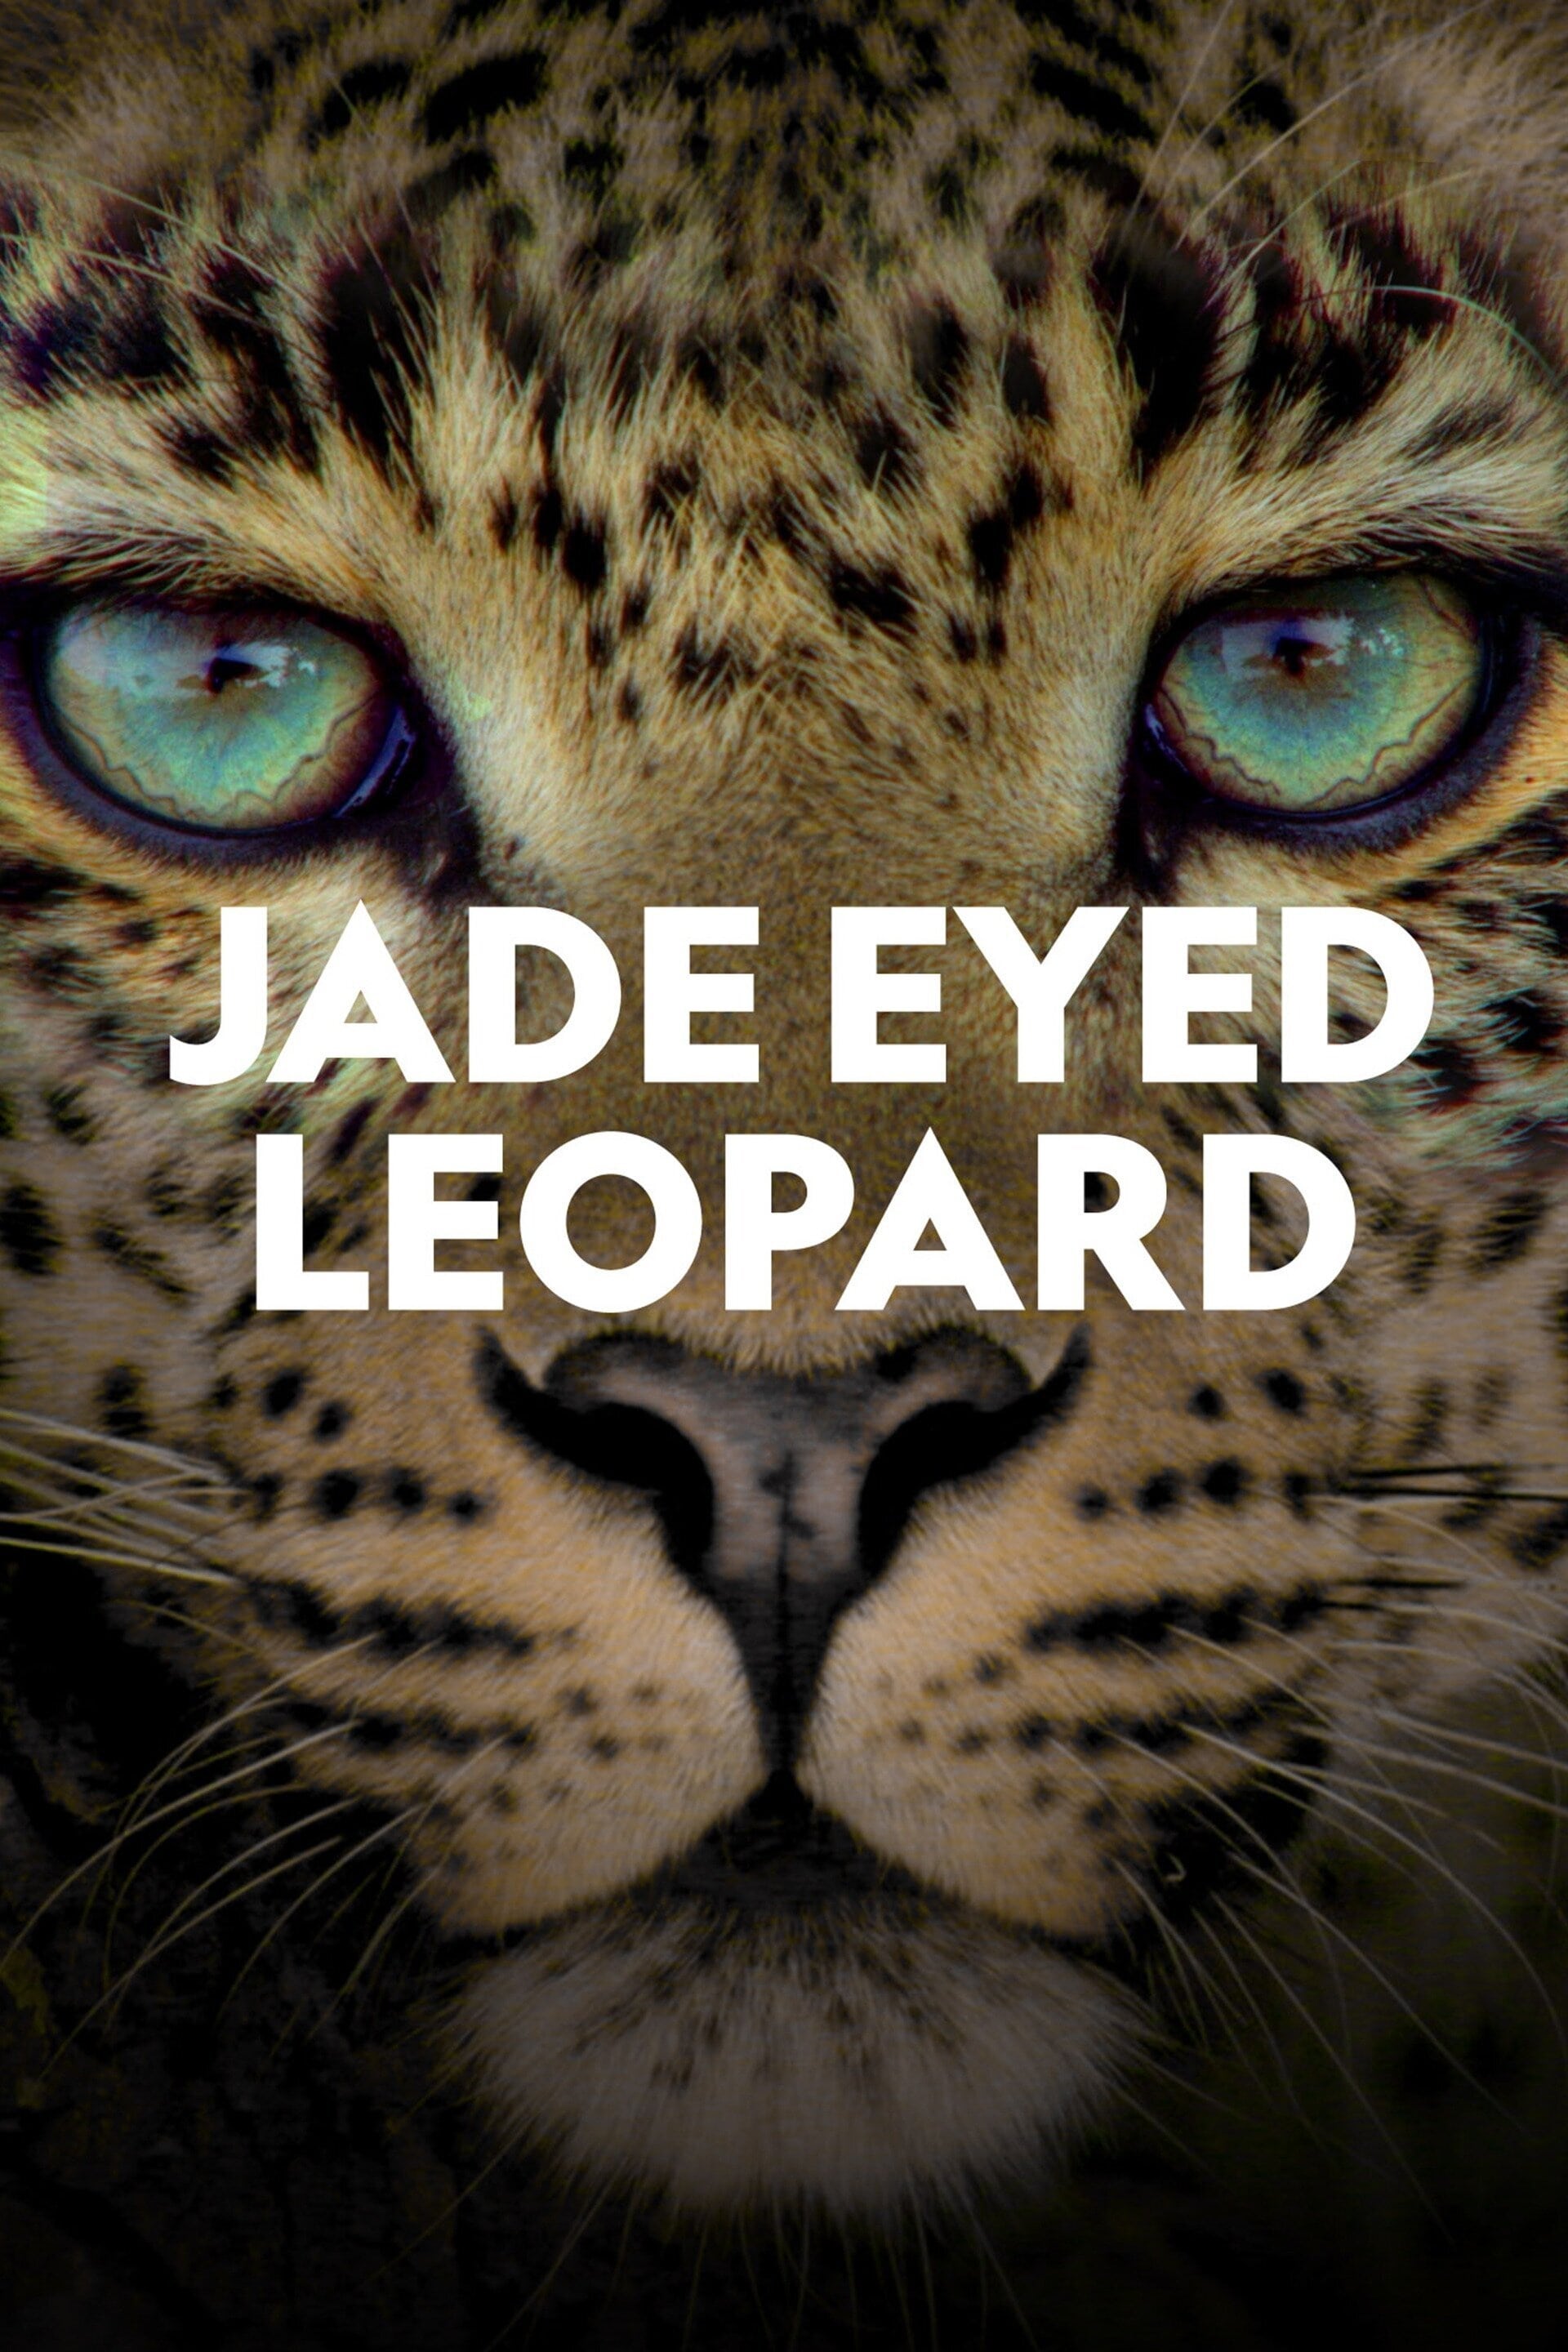 Leopardo de ojos jades